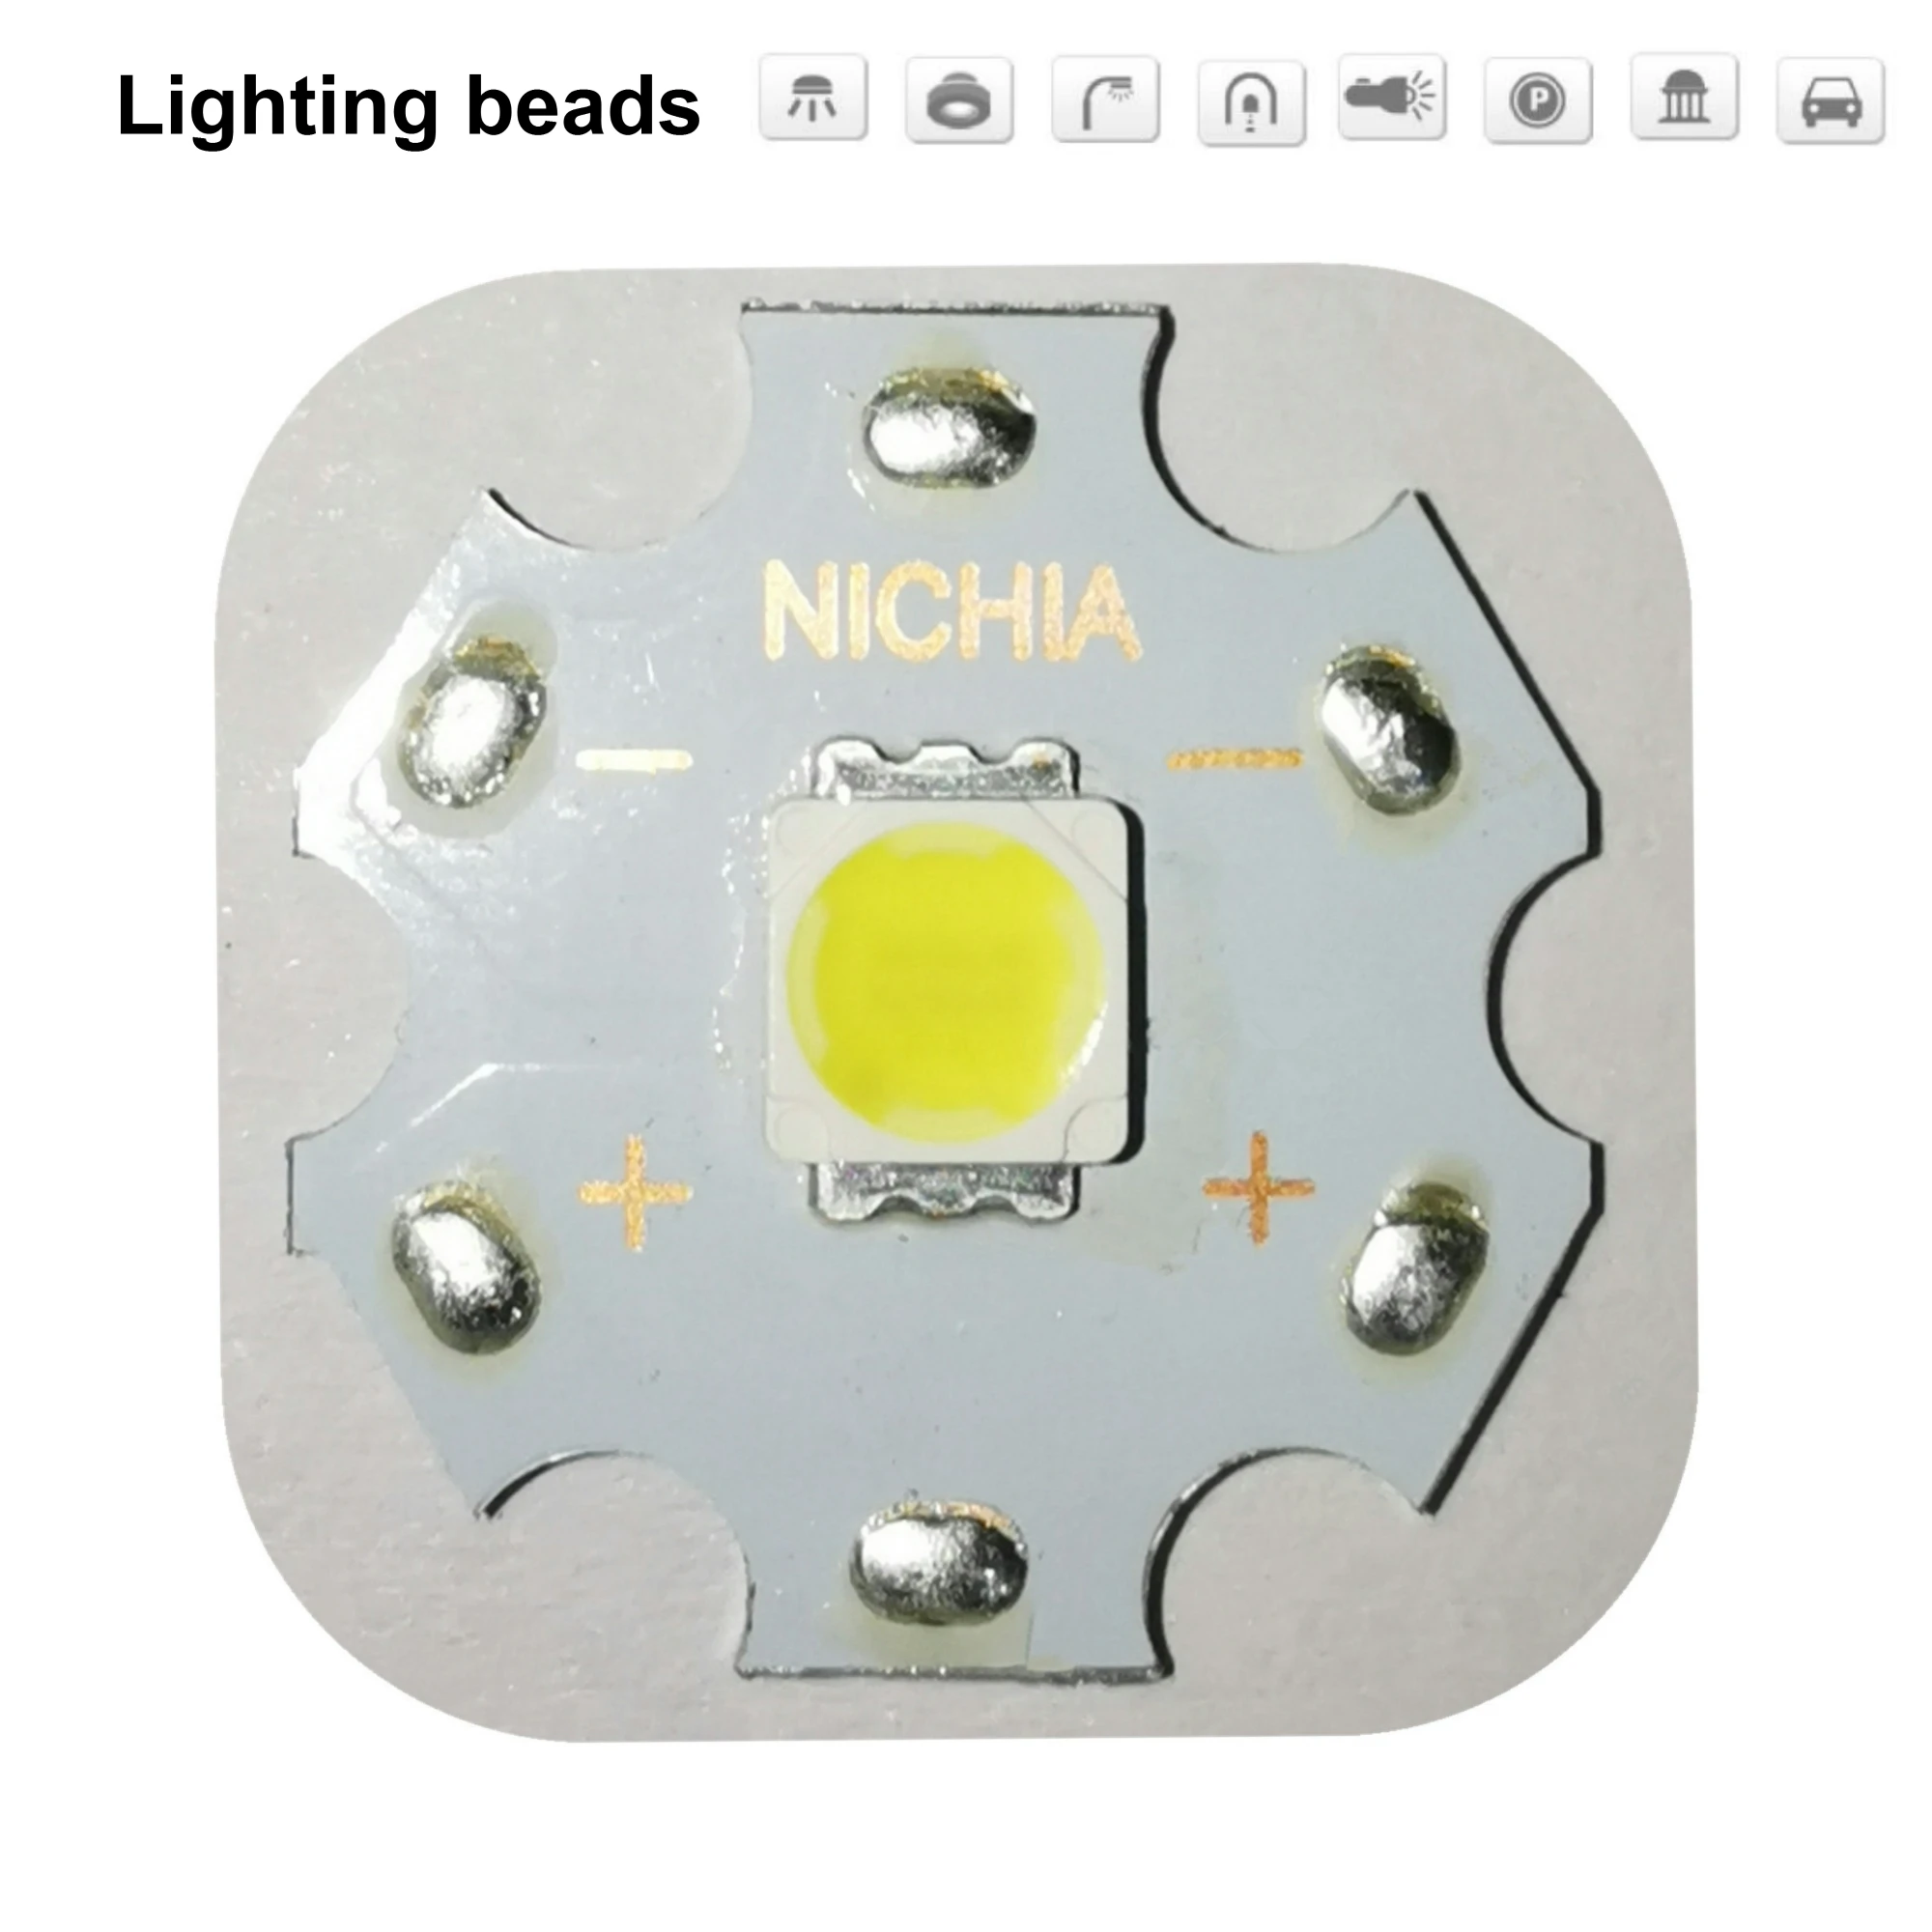 10 шт. NICHIA Cree MKR MK-R светодиодный 5060 излучатель 3 Вт 3 в теплый белый мигающий светильник фонарь светодиодный диодный чип светильник 280лм на 20 мм медной печатной плате